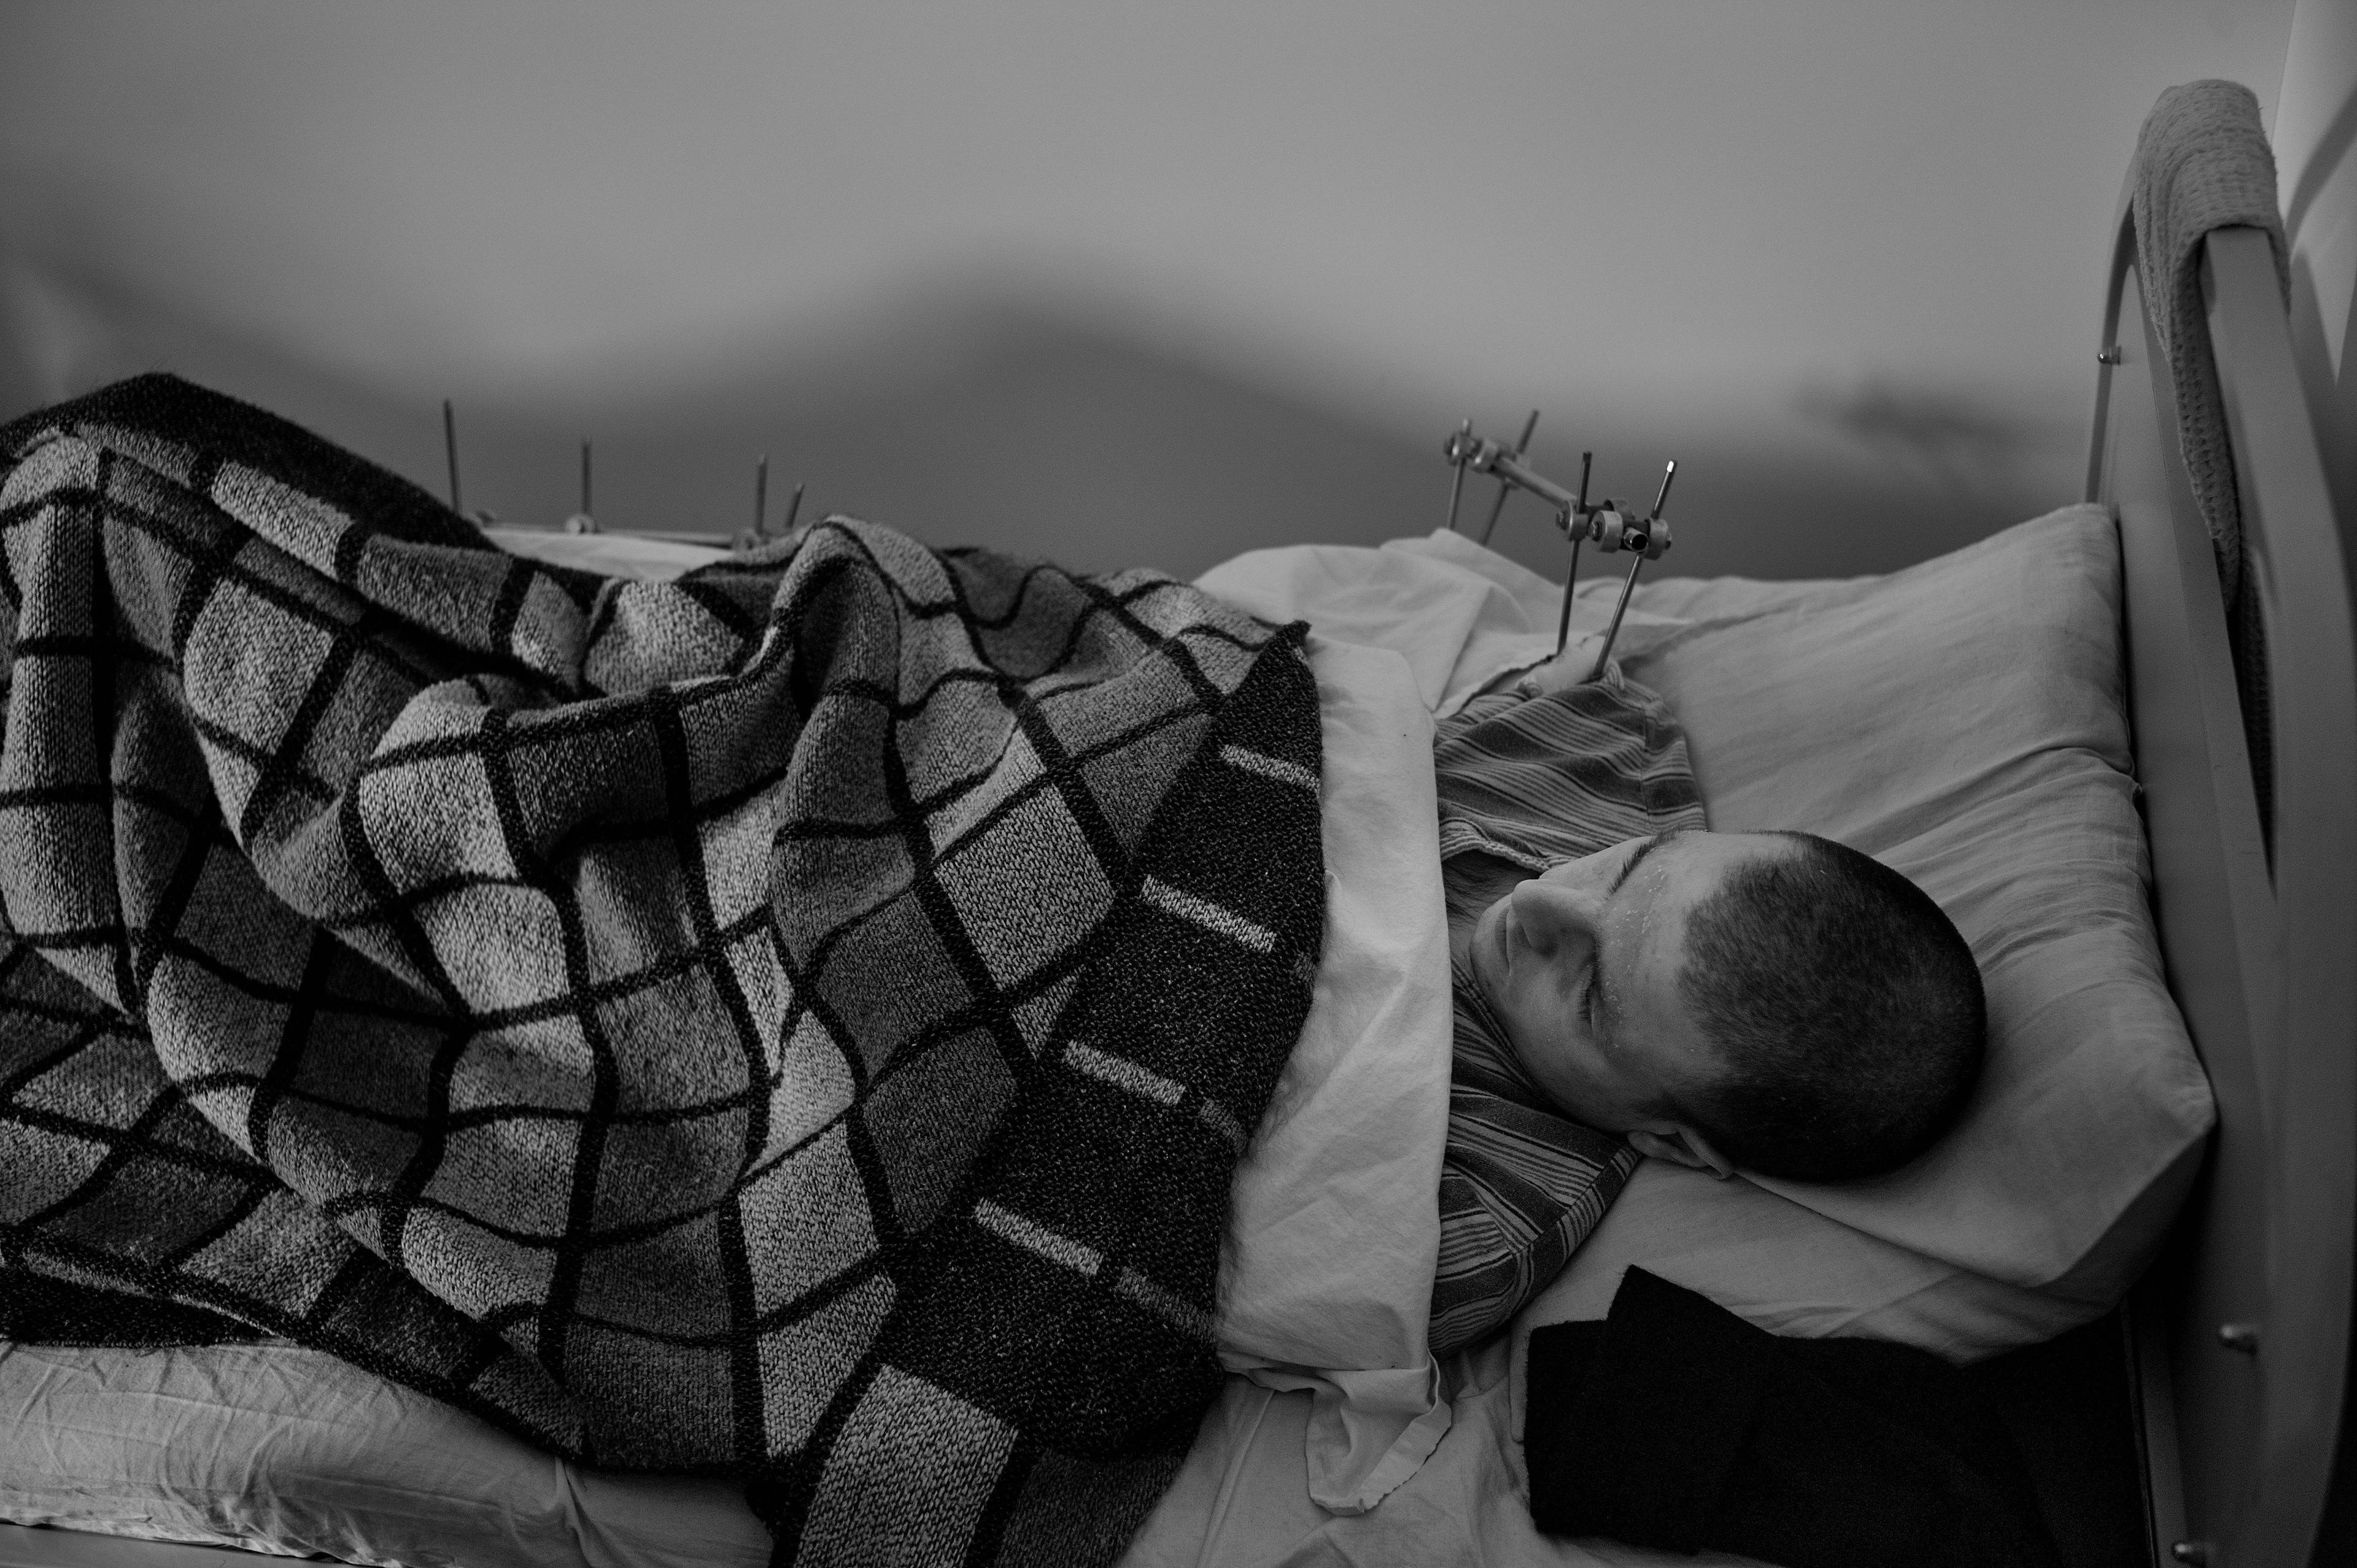 czarno-białe zdjęcie. Mężczyzna krótko ostrzyżony leży w łóżku pod kraciastym kocem. Widać metalową konstrukcje, która mocuje jego ramię